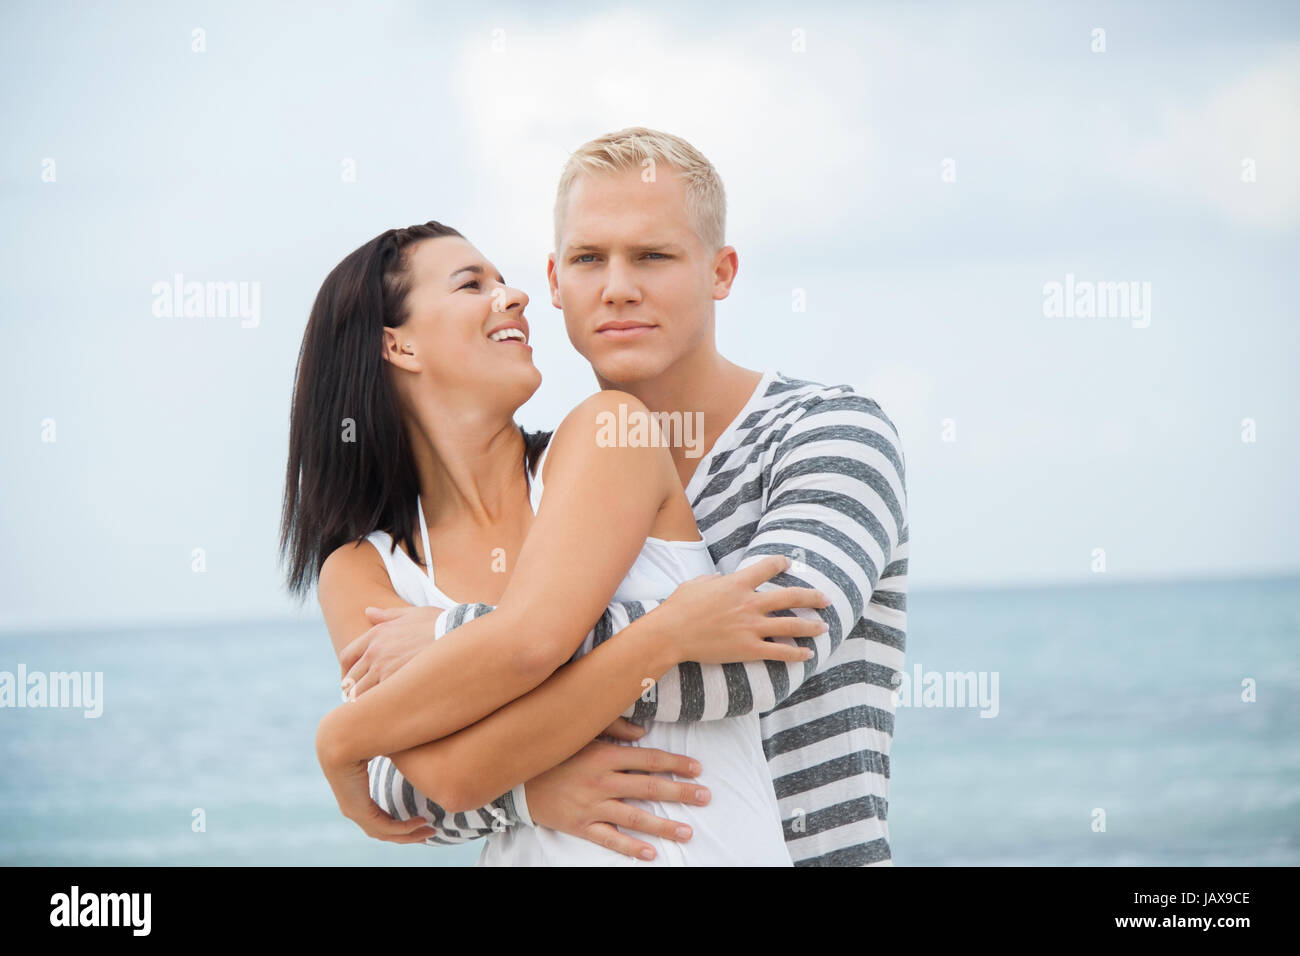 junges glückliches verliebtes paar hat spaß im sommer am strand Stock Photo